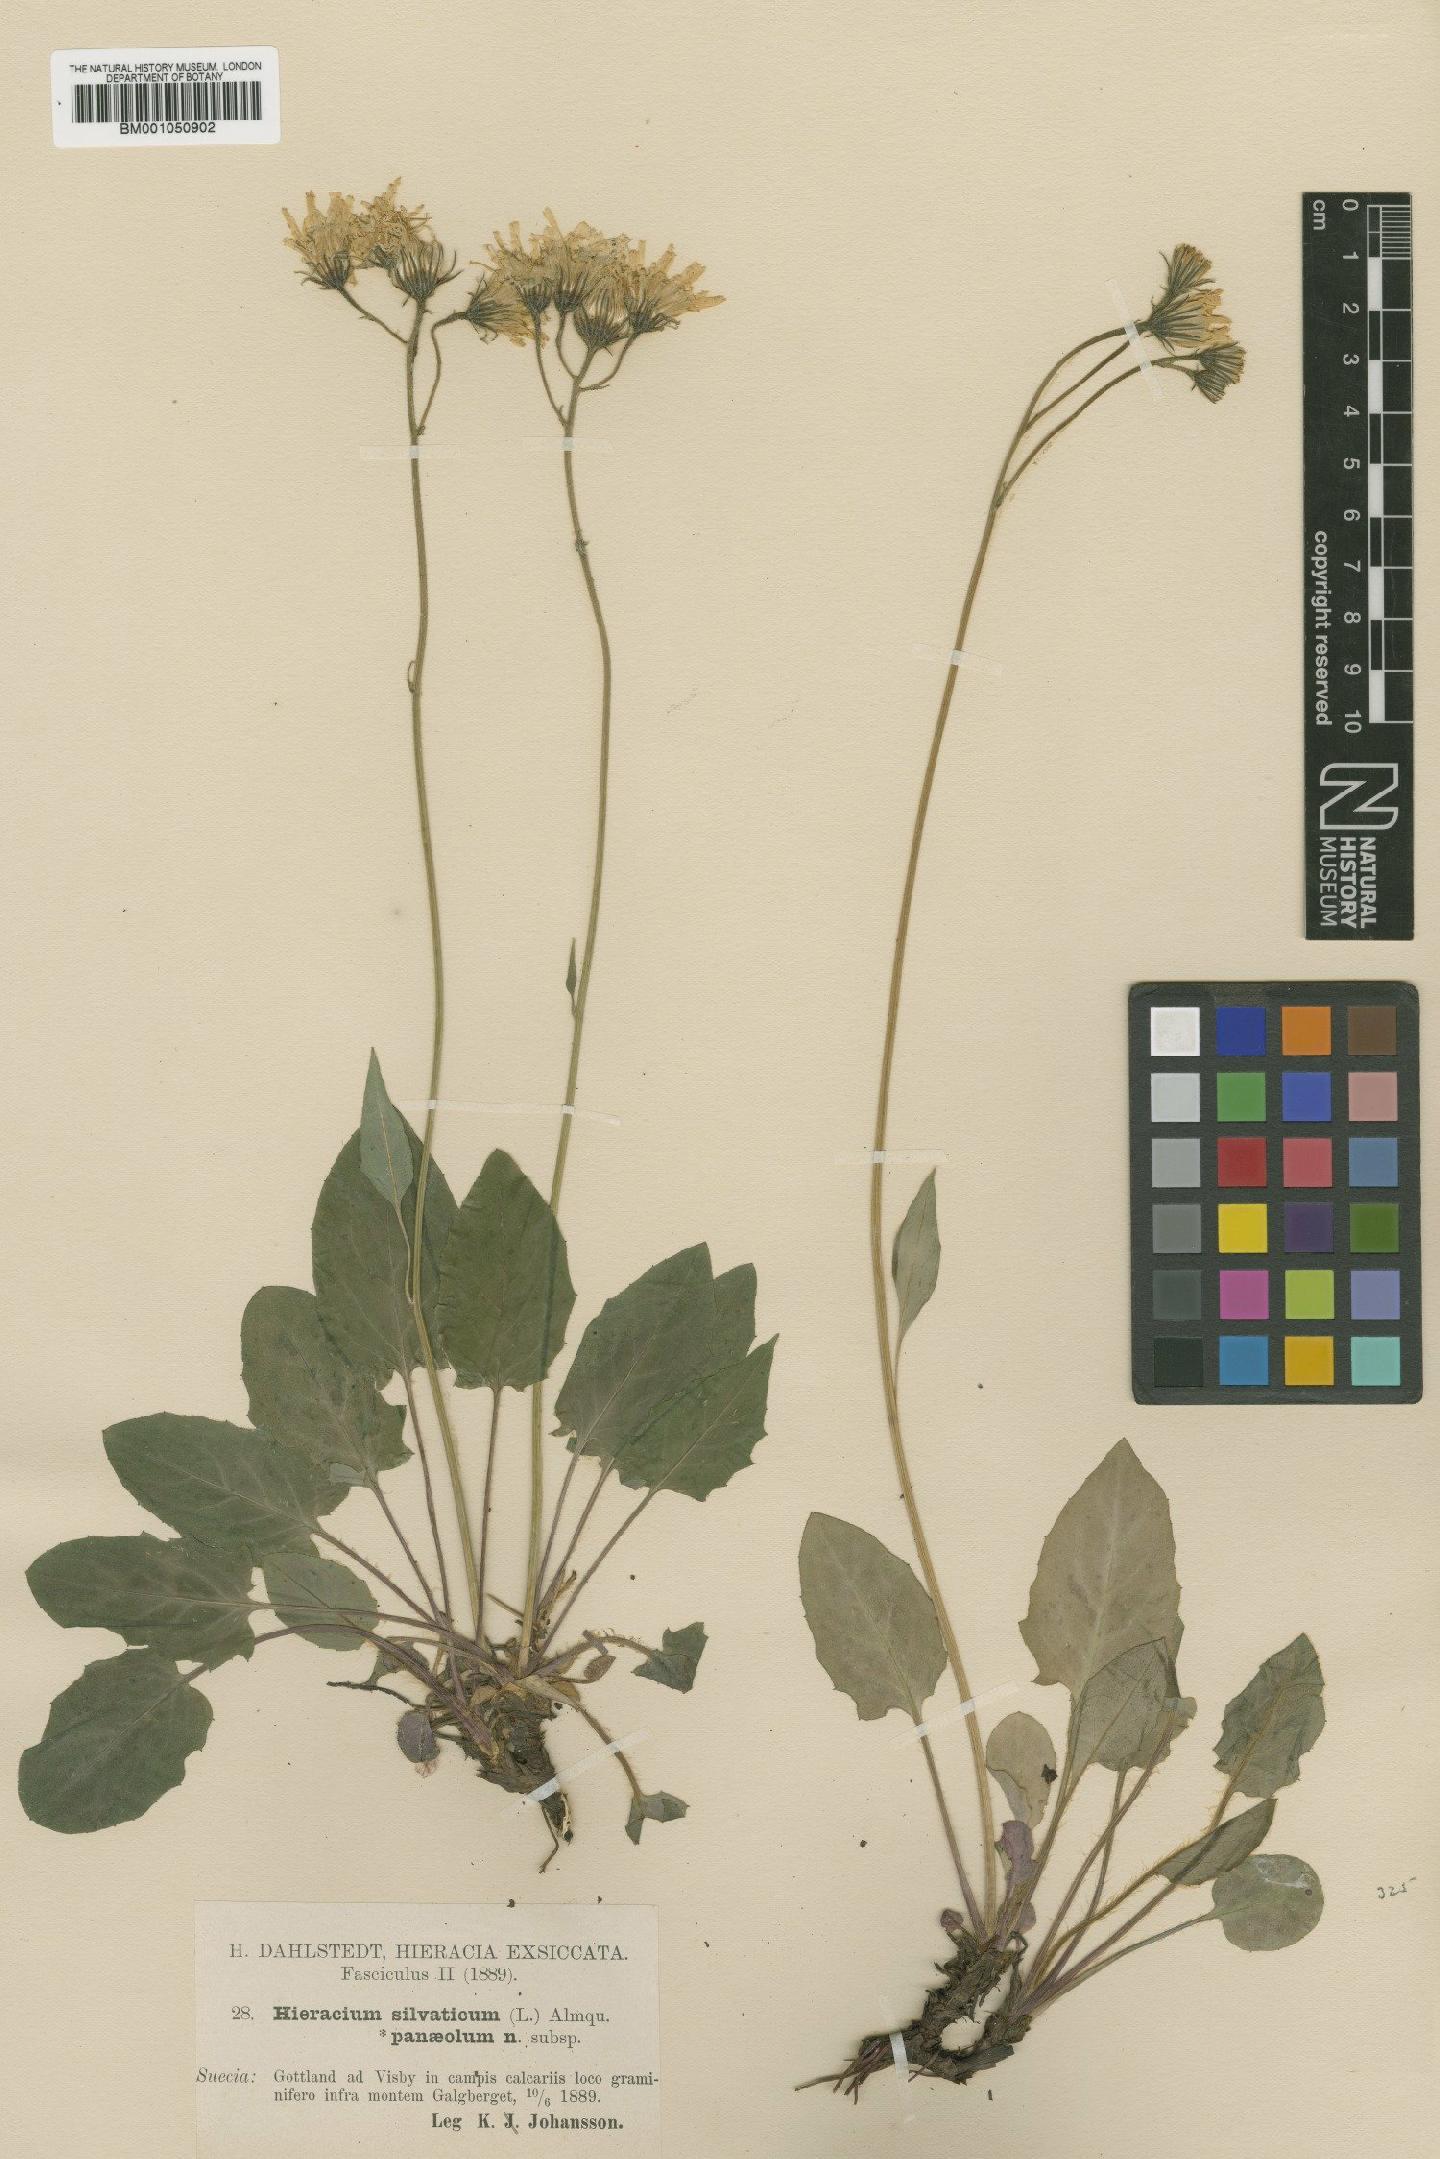 To NHMUK collection (Hieracium murorum subsp. panaeolum (Dahlst.) Zahn; TYPE; NHMUK:ecatalogue:2401496)